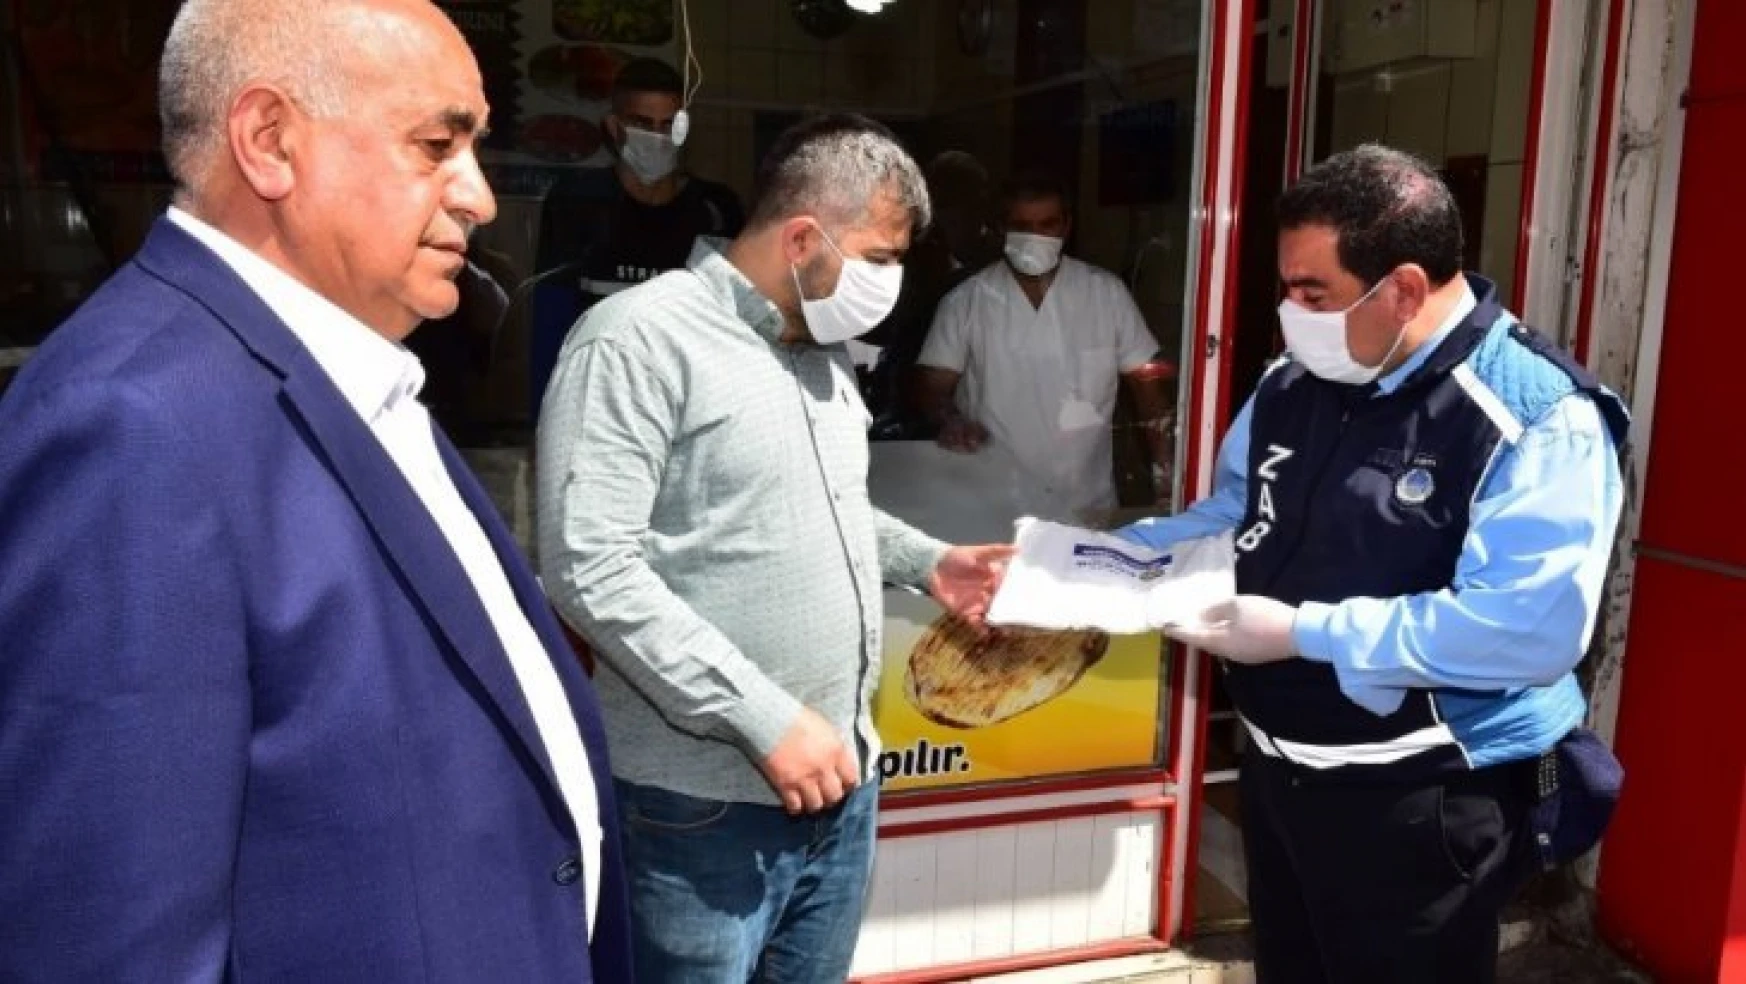 Malatya'da fırıncılara maske dağıtıldı